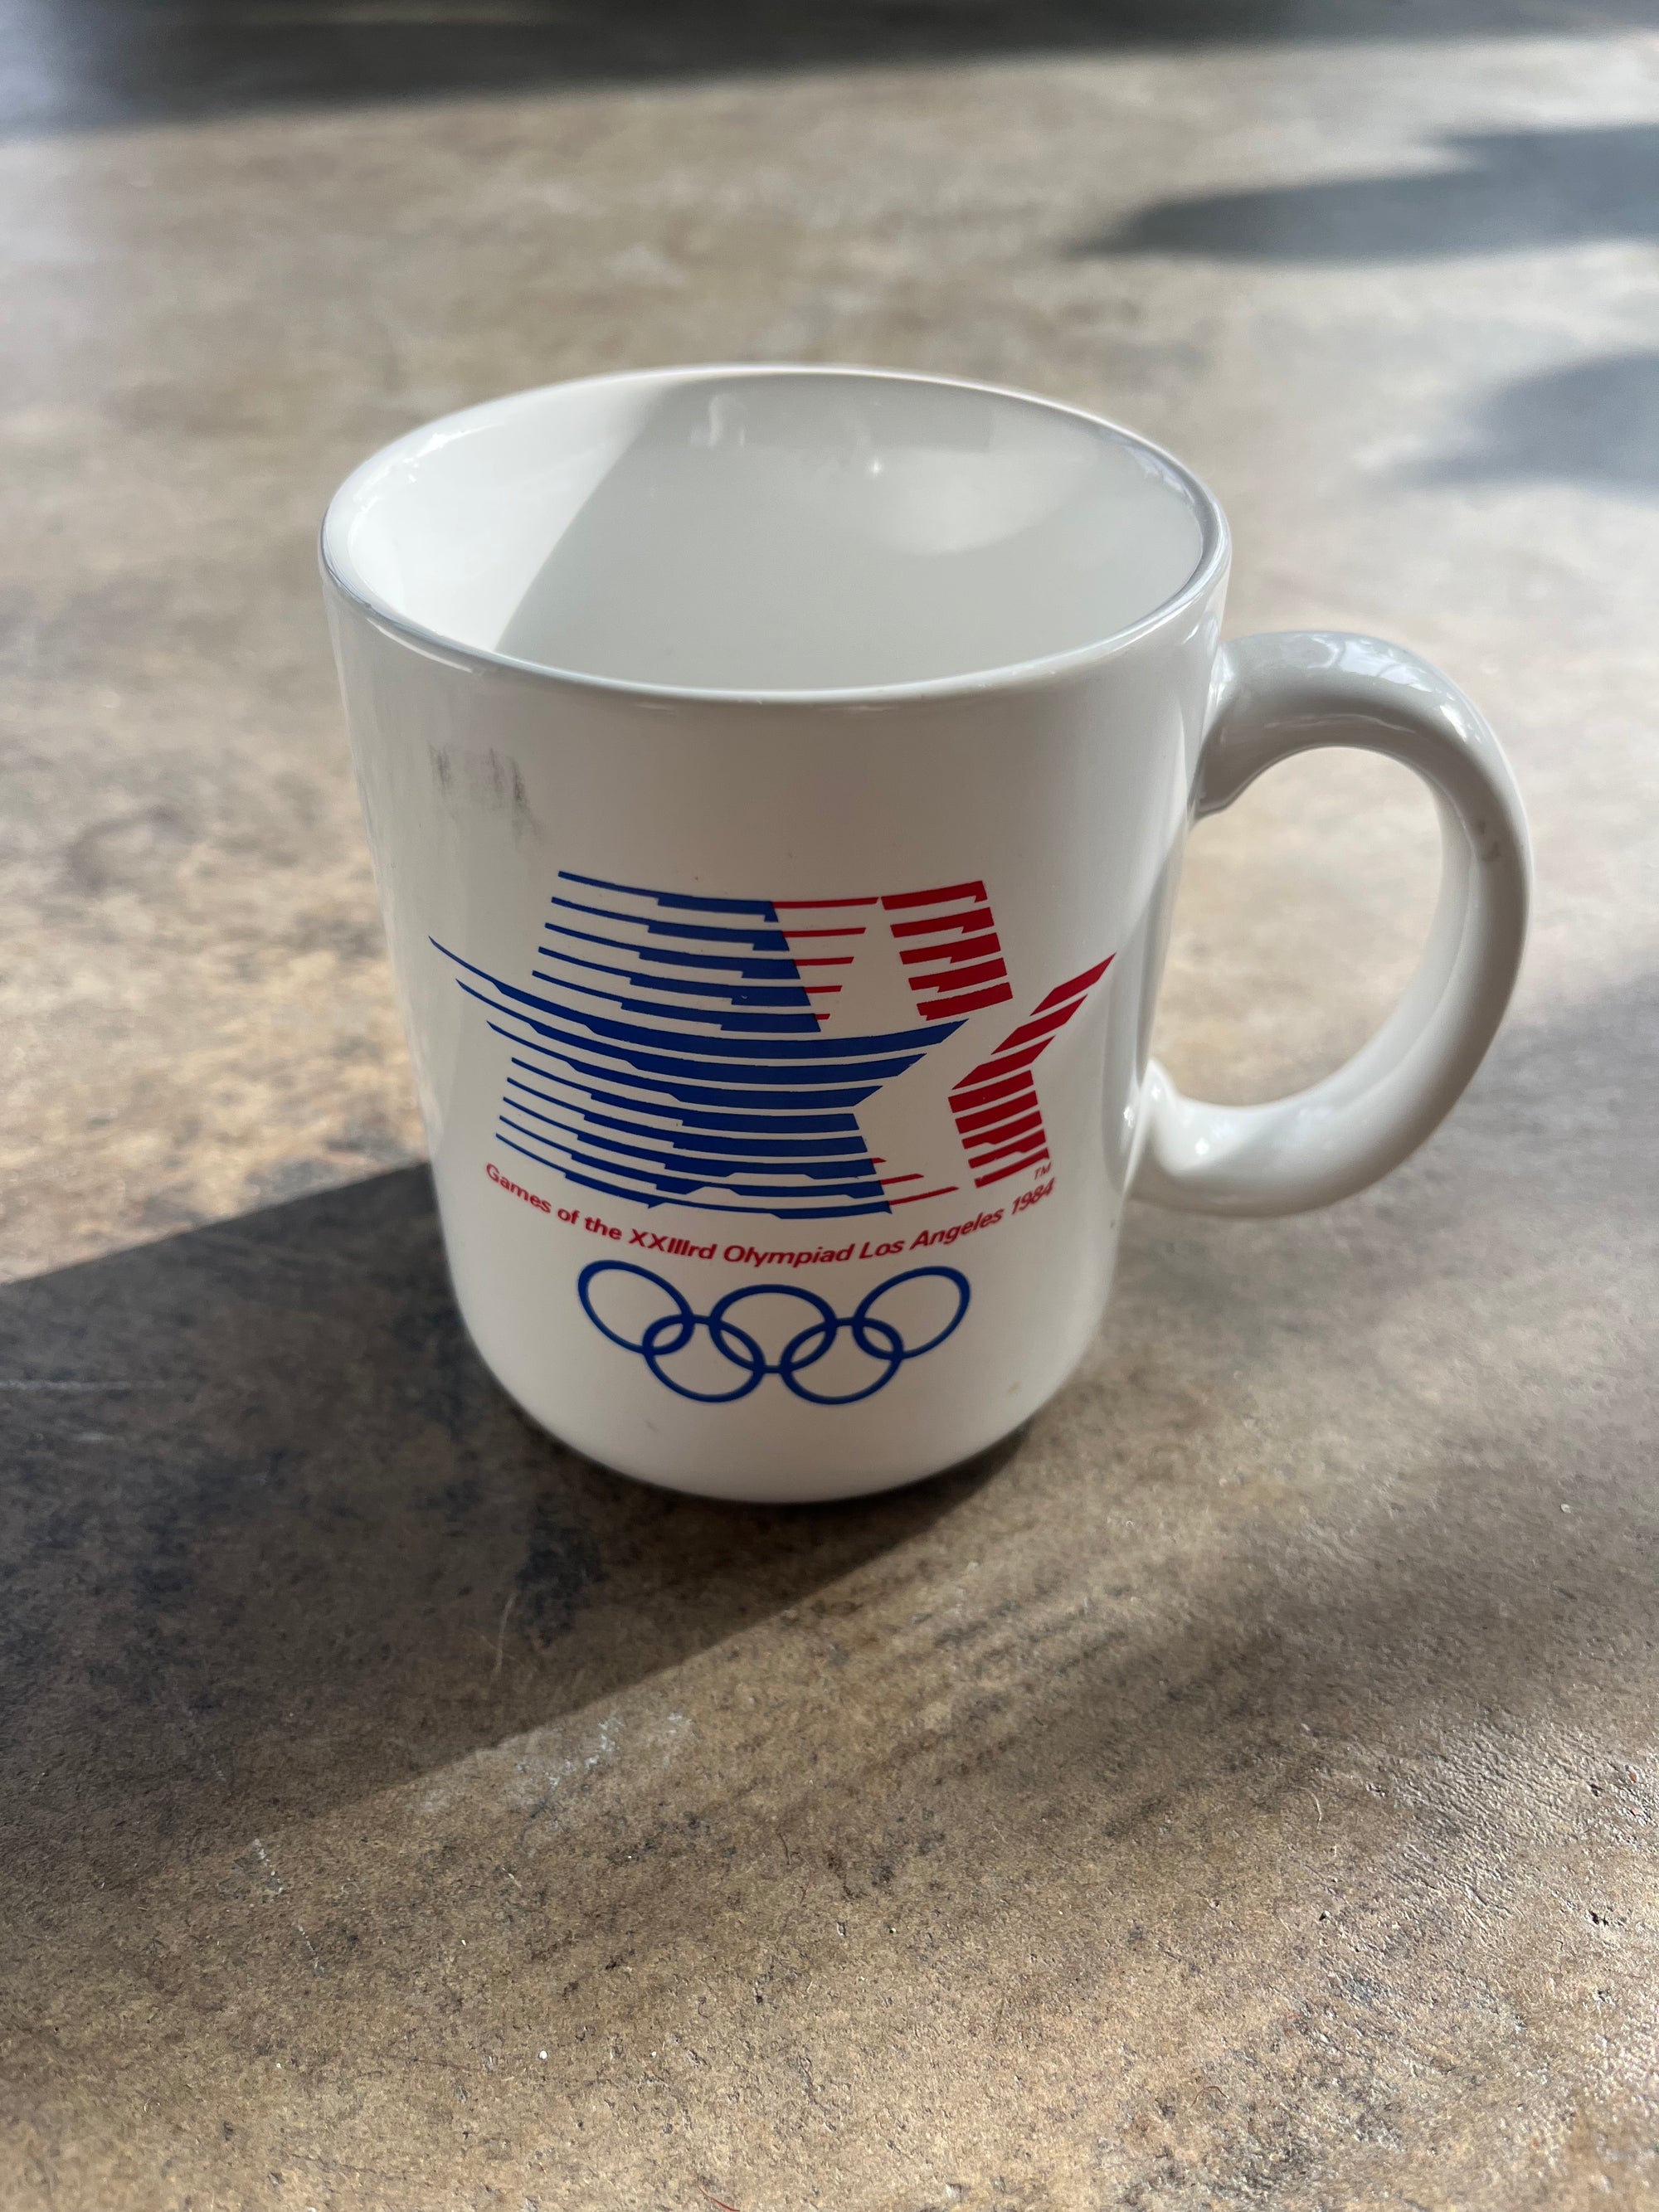 1984 LA Olympiad Mug